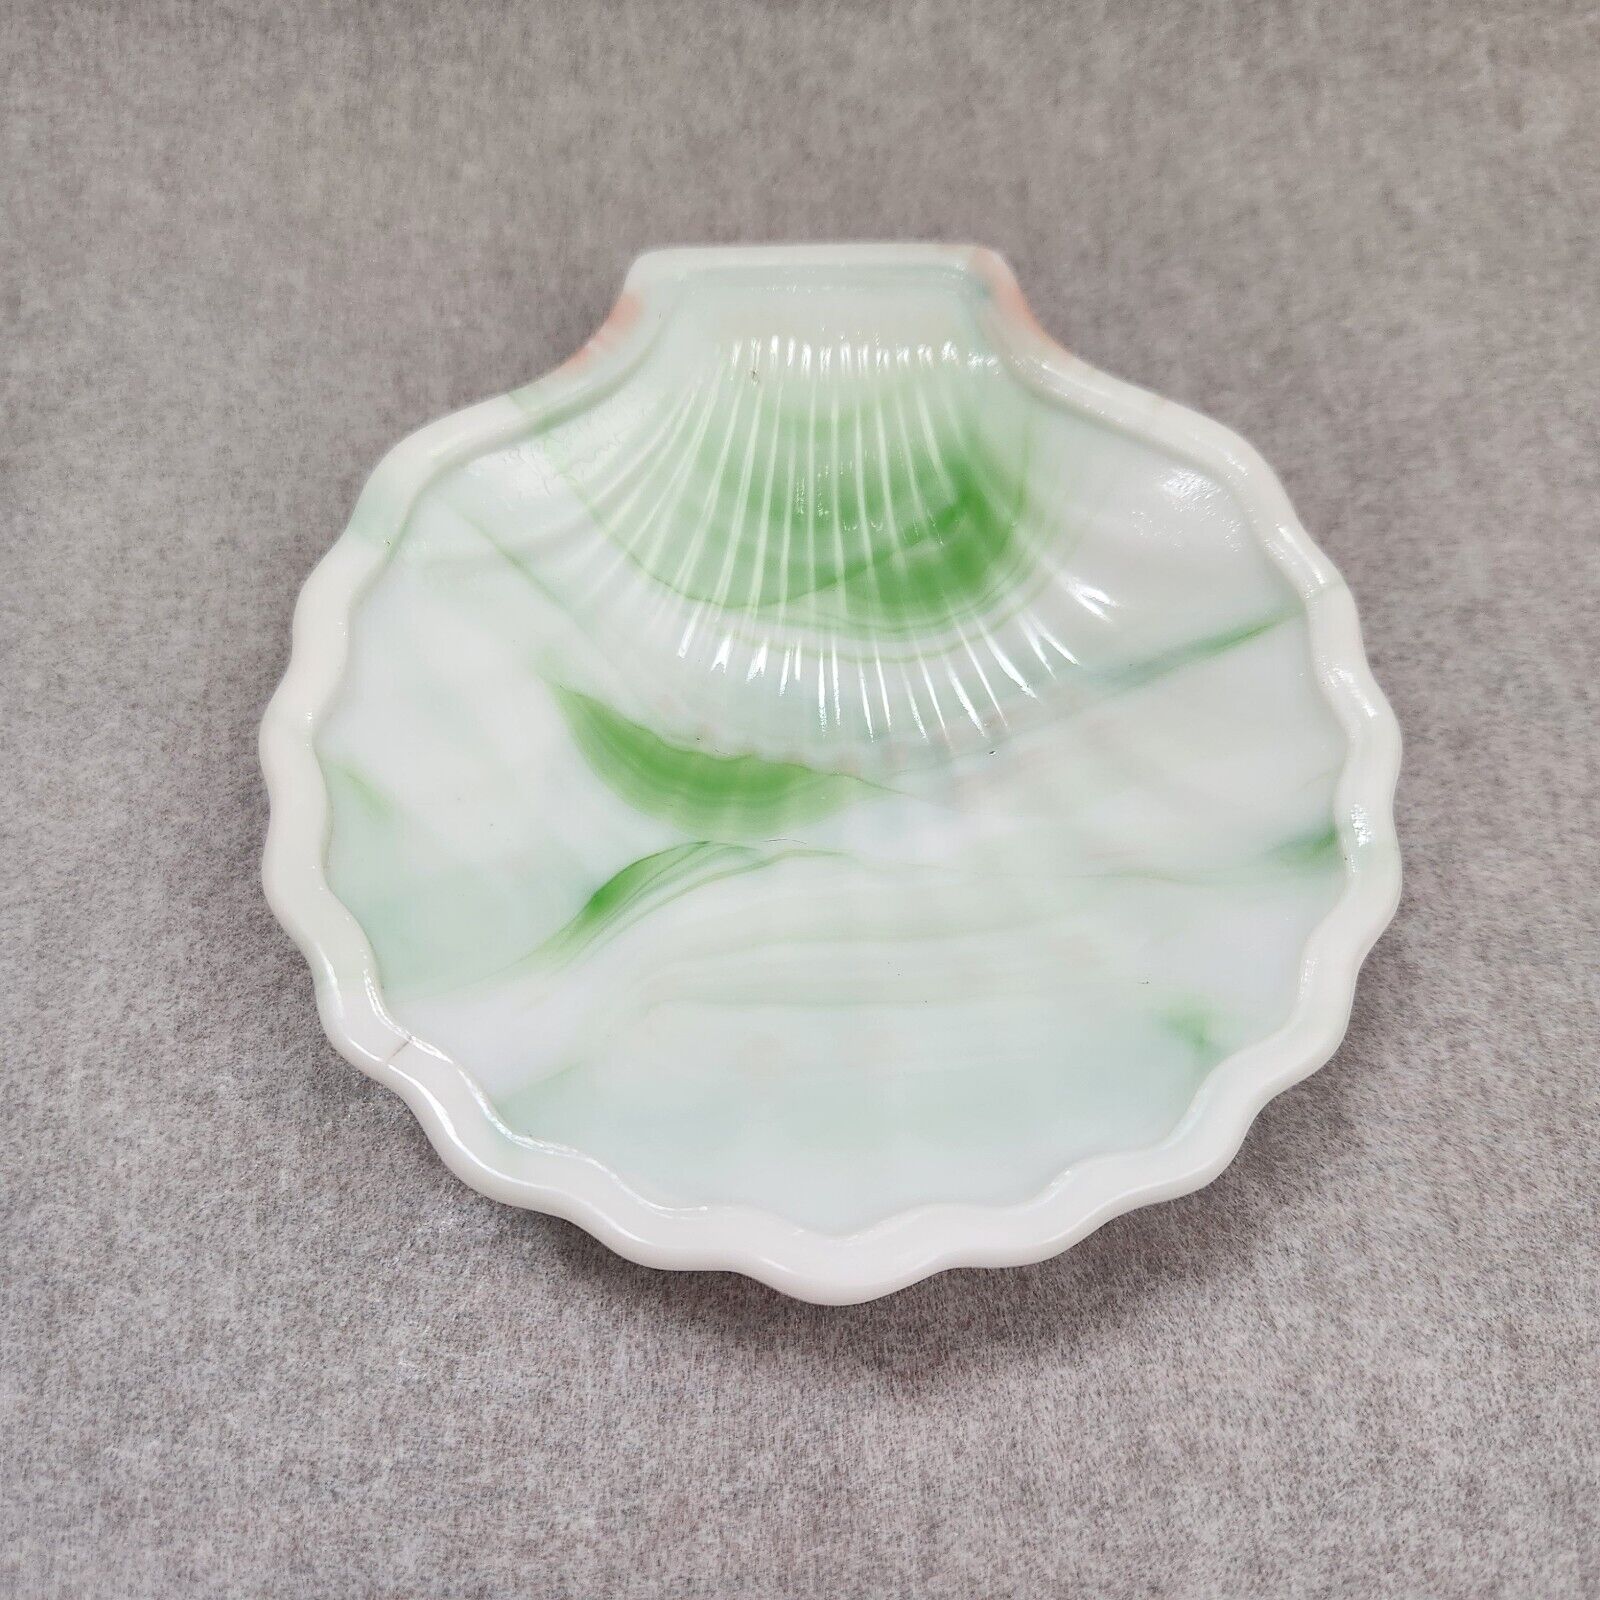 Vtg Akro Agate Slag Glass Scallop Shell Dish Green White Swirl USA